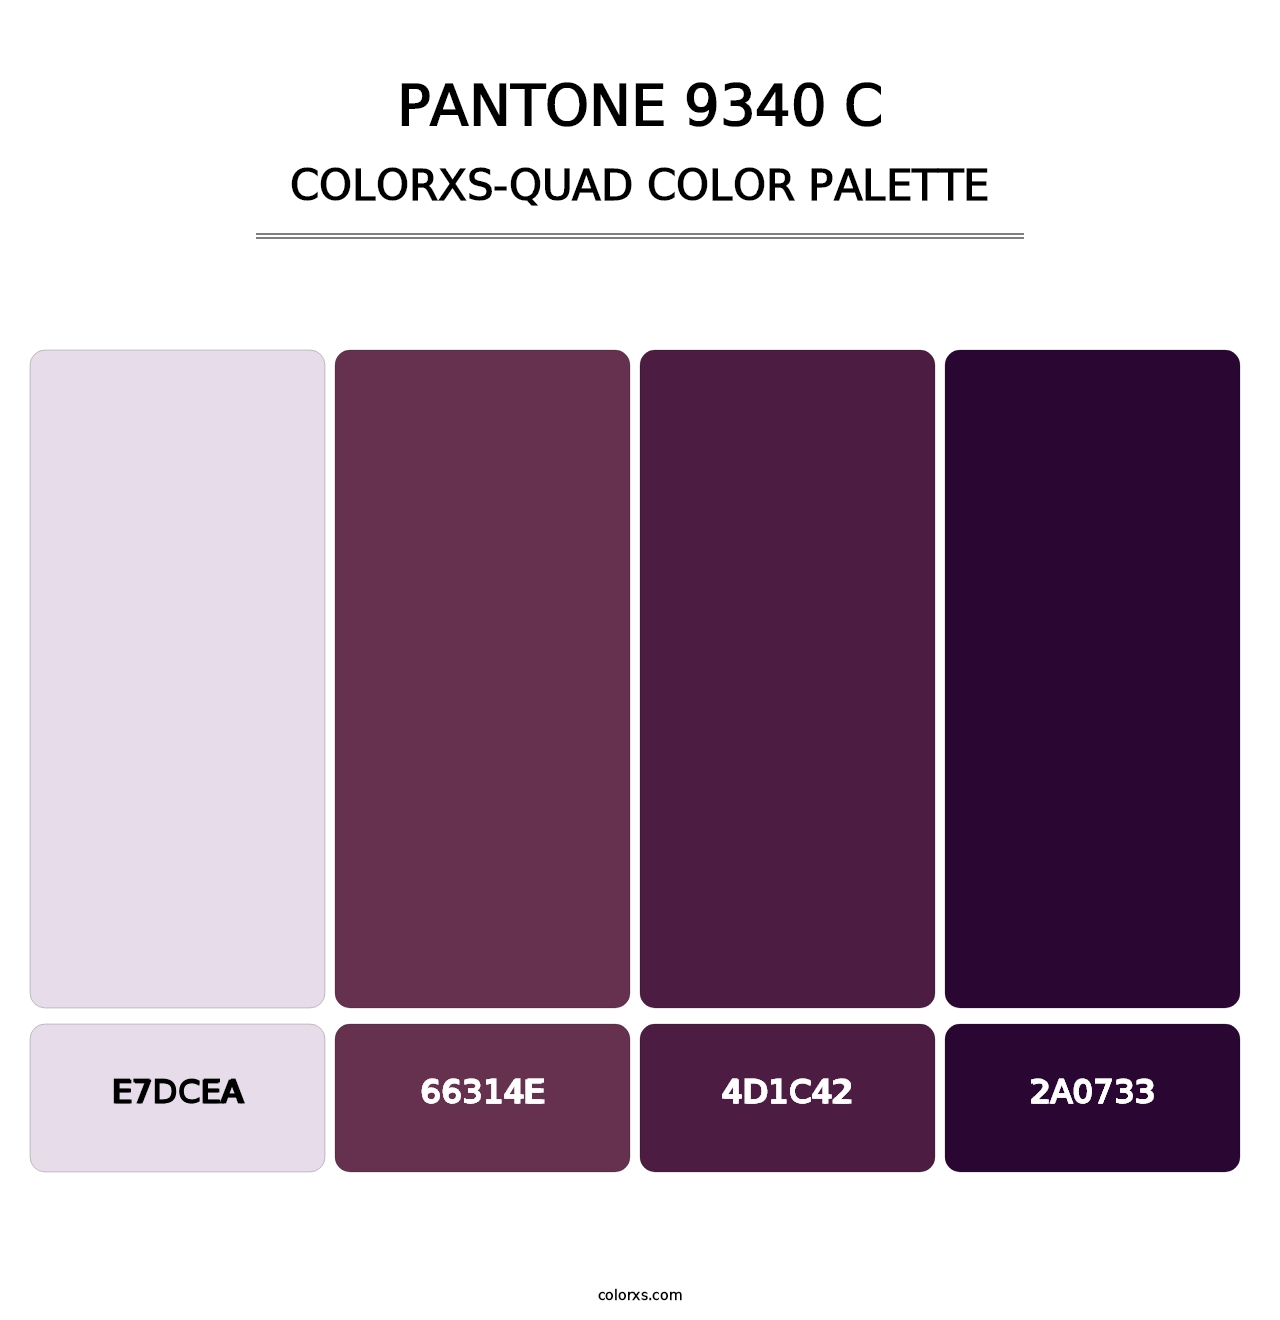 PANTONE 9340 C - Colorxs Quad Palette